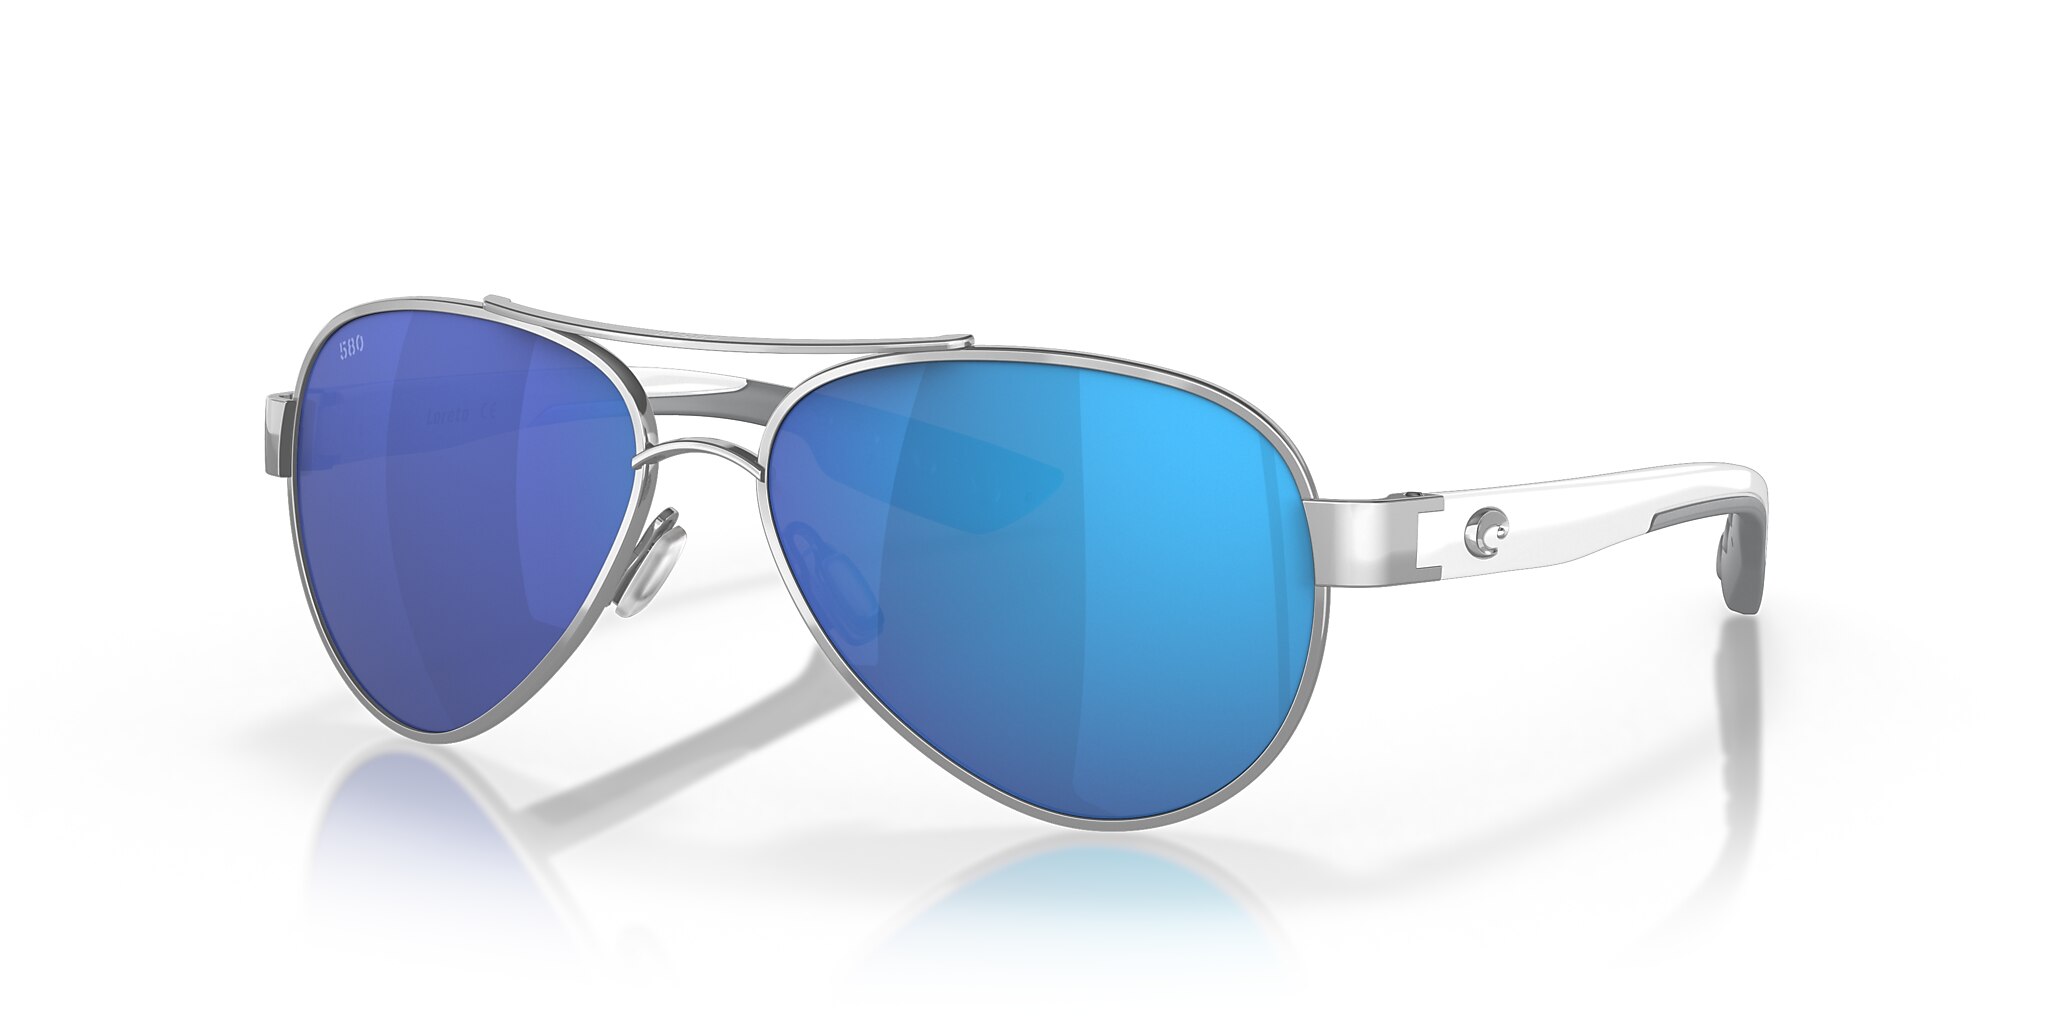 Loreto Polarized Sunglasses in Blue Mirror | Costa Del Mar®